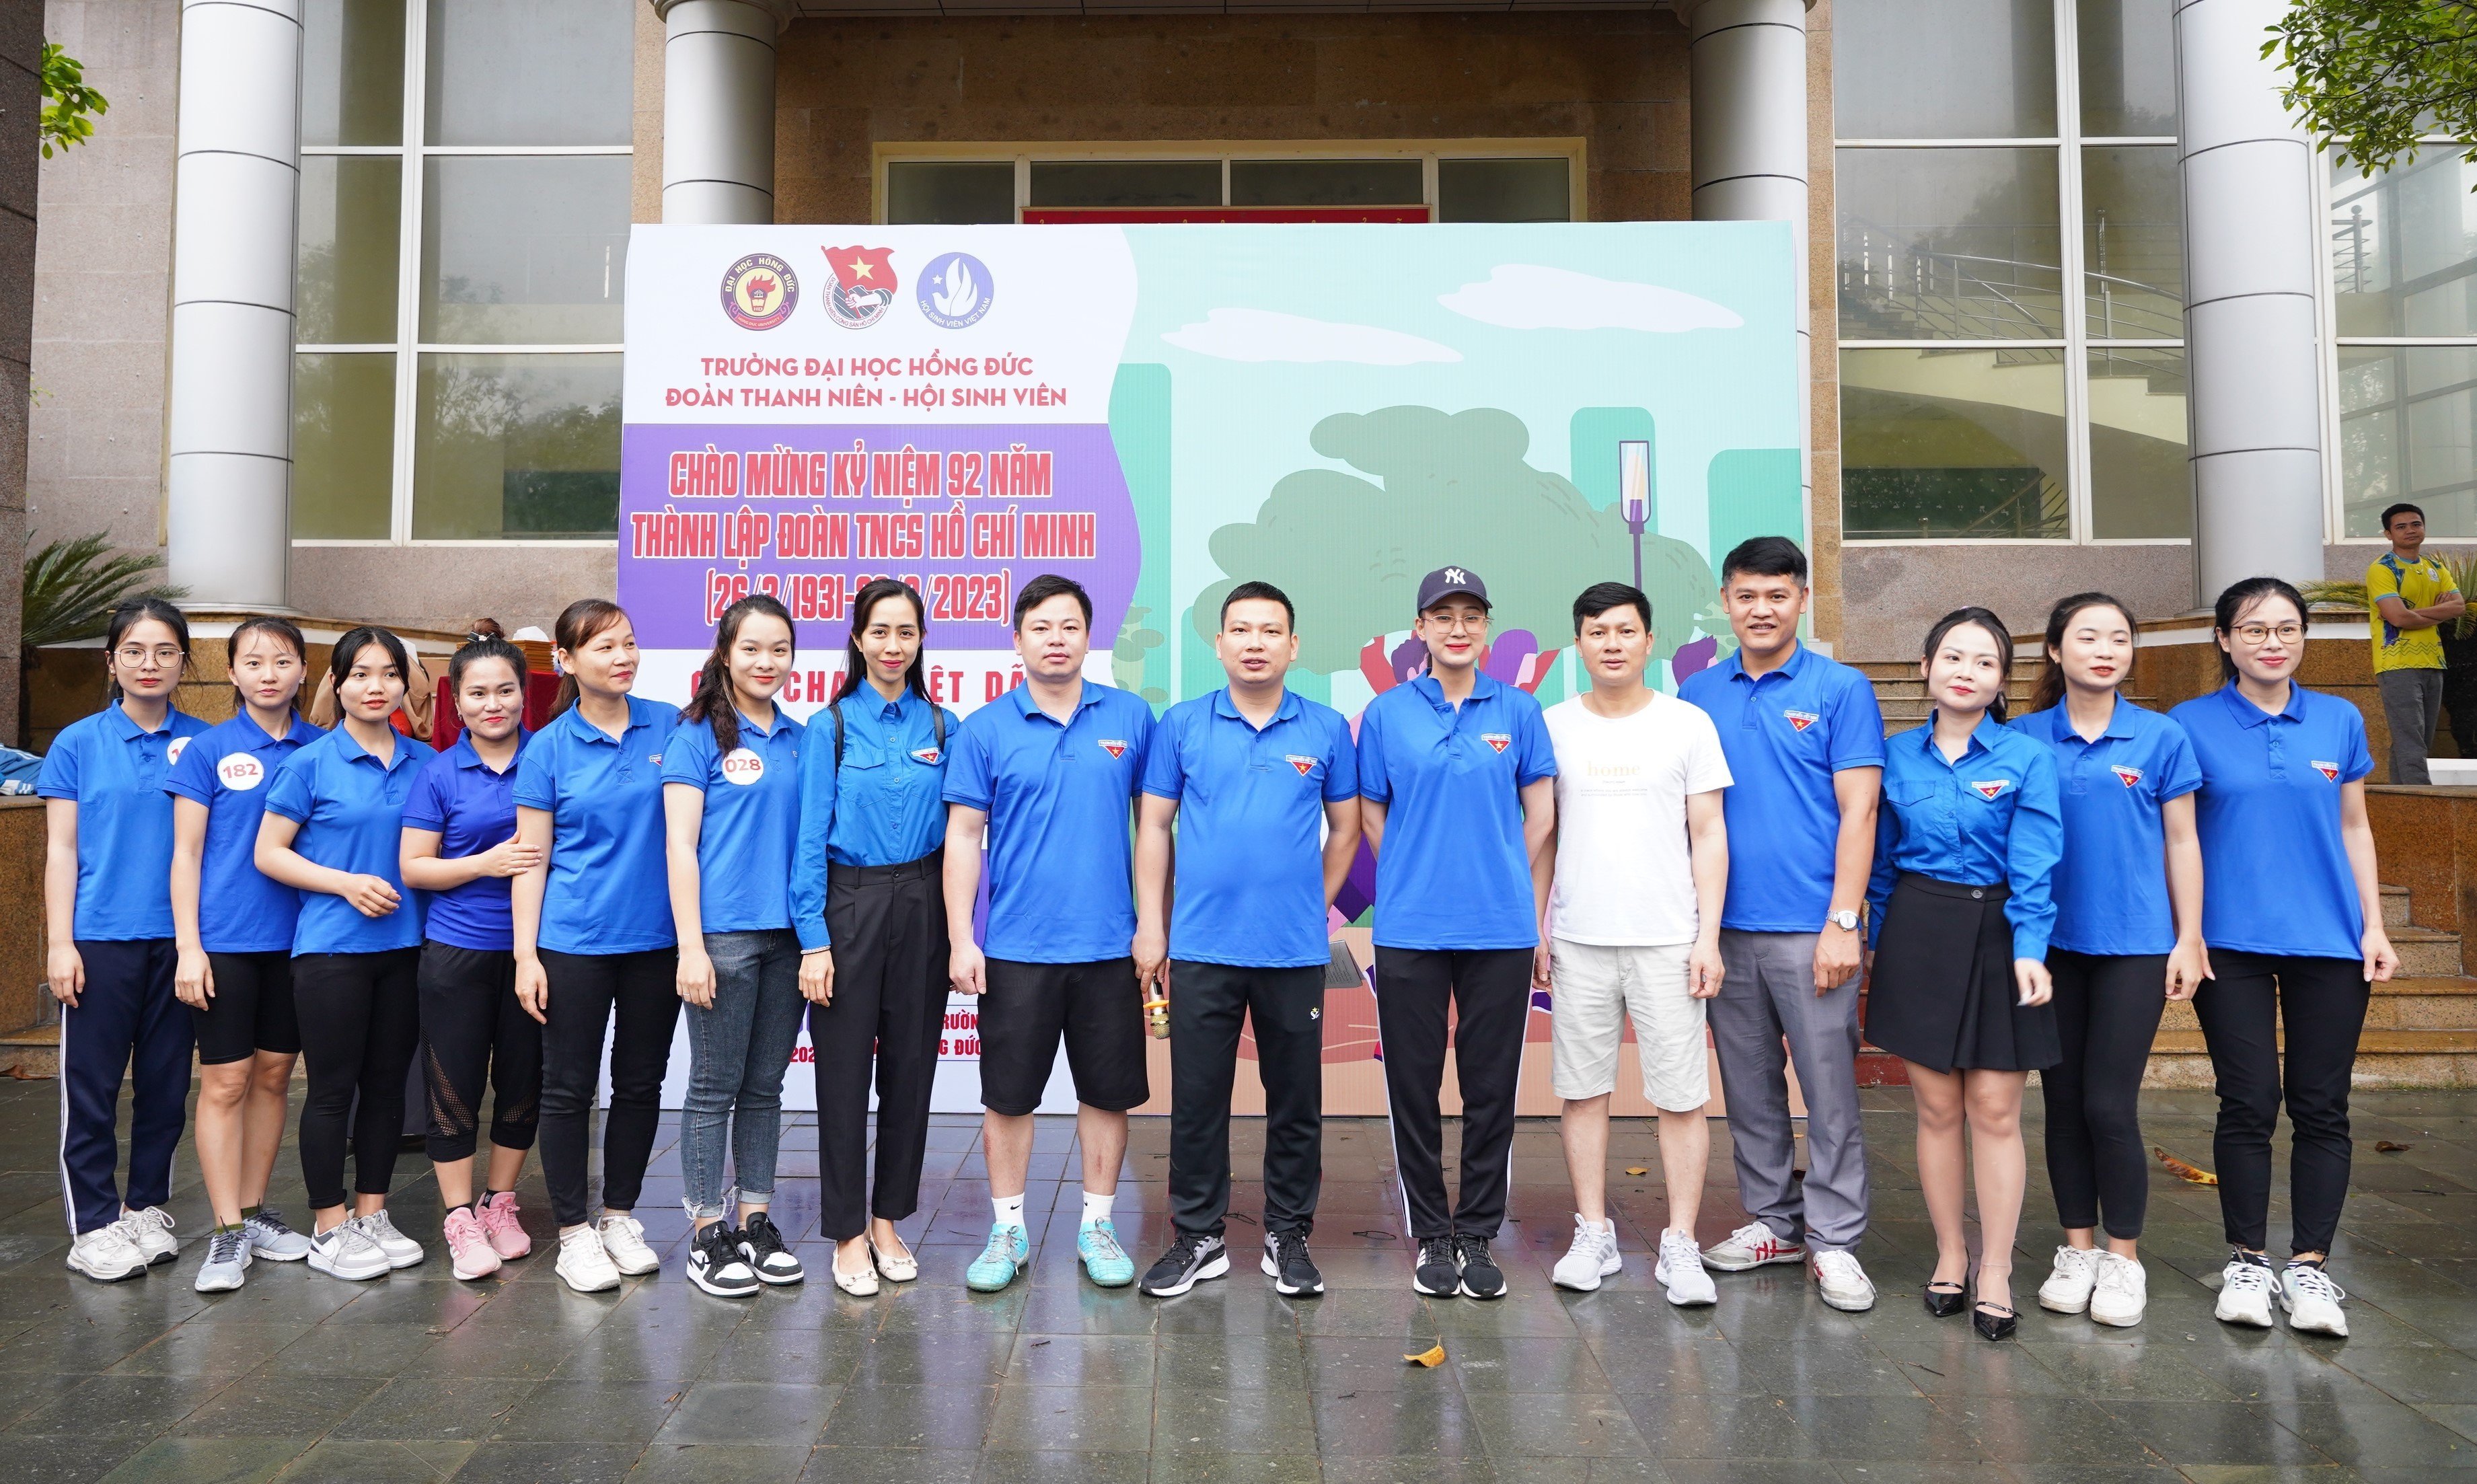 Đoàn trường tổ chức thành công Giải chạy Việt dã "Running for Youth" chào mừng kỉ niệm 92 năm ngày thành lập Đoàn TNCS Hồ Chí Minh (26/3/1931-26/3/2023)